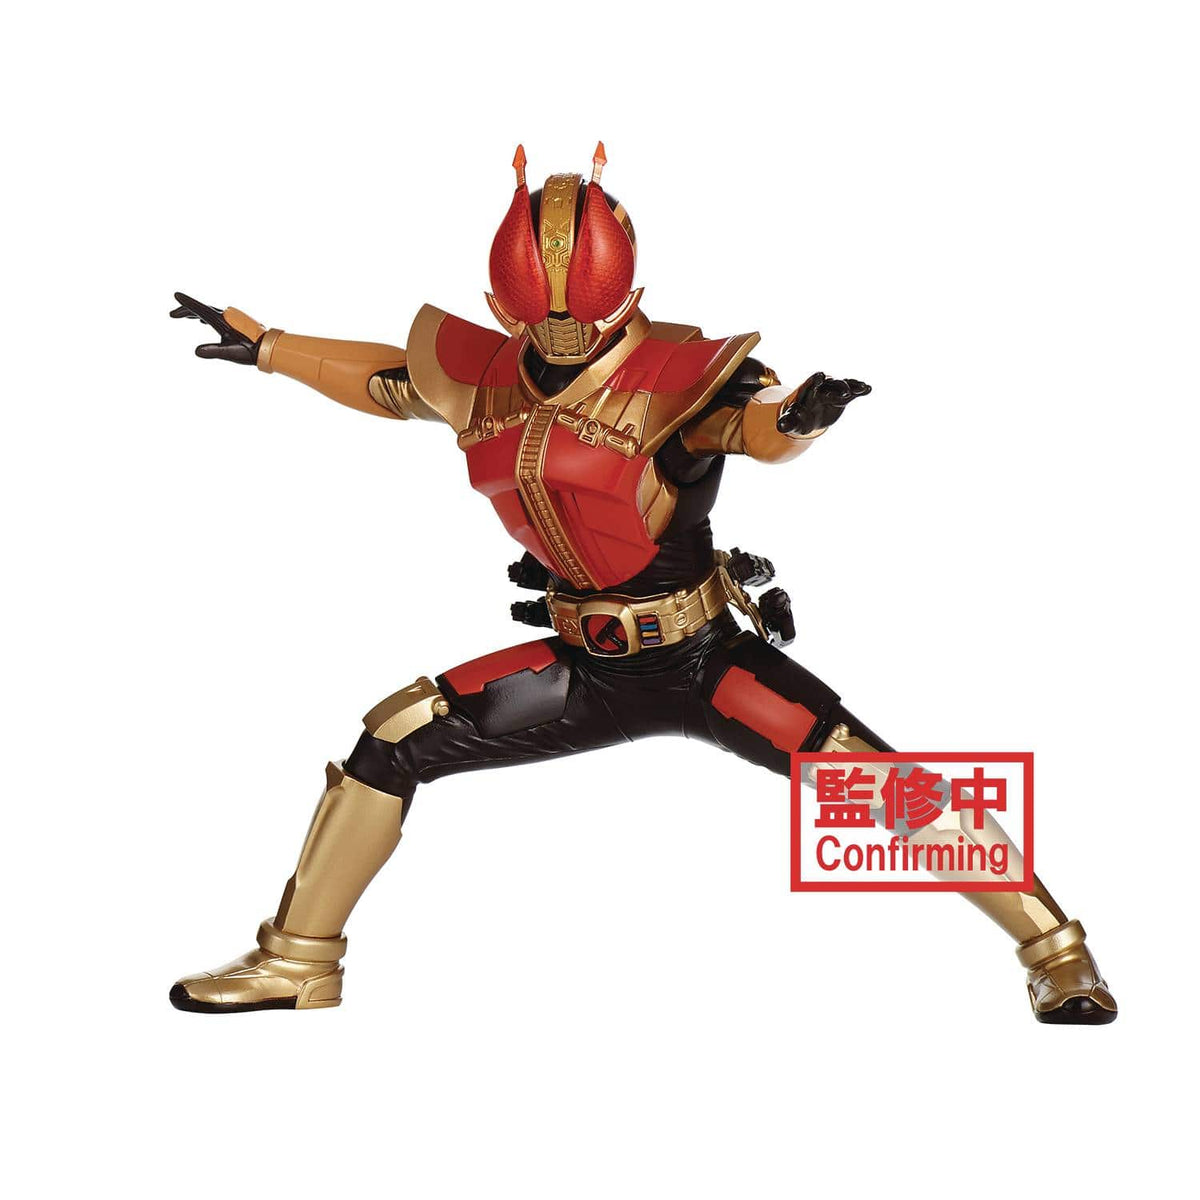 Banpresto Hero's Brave Statue: Kamen Rider - Masked Rider Den-0 Sword Form, Ver. B - Third Eye